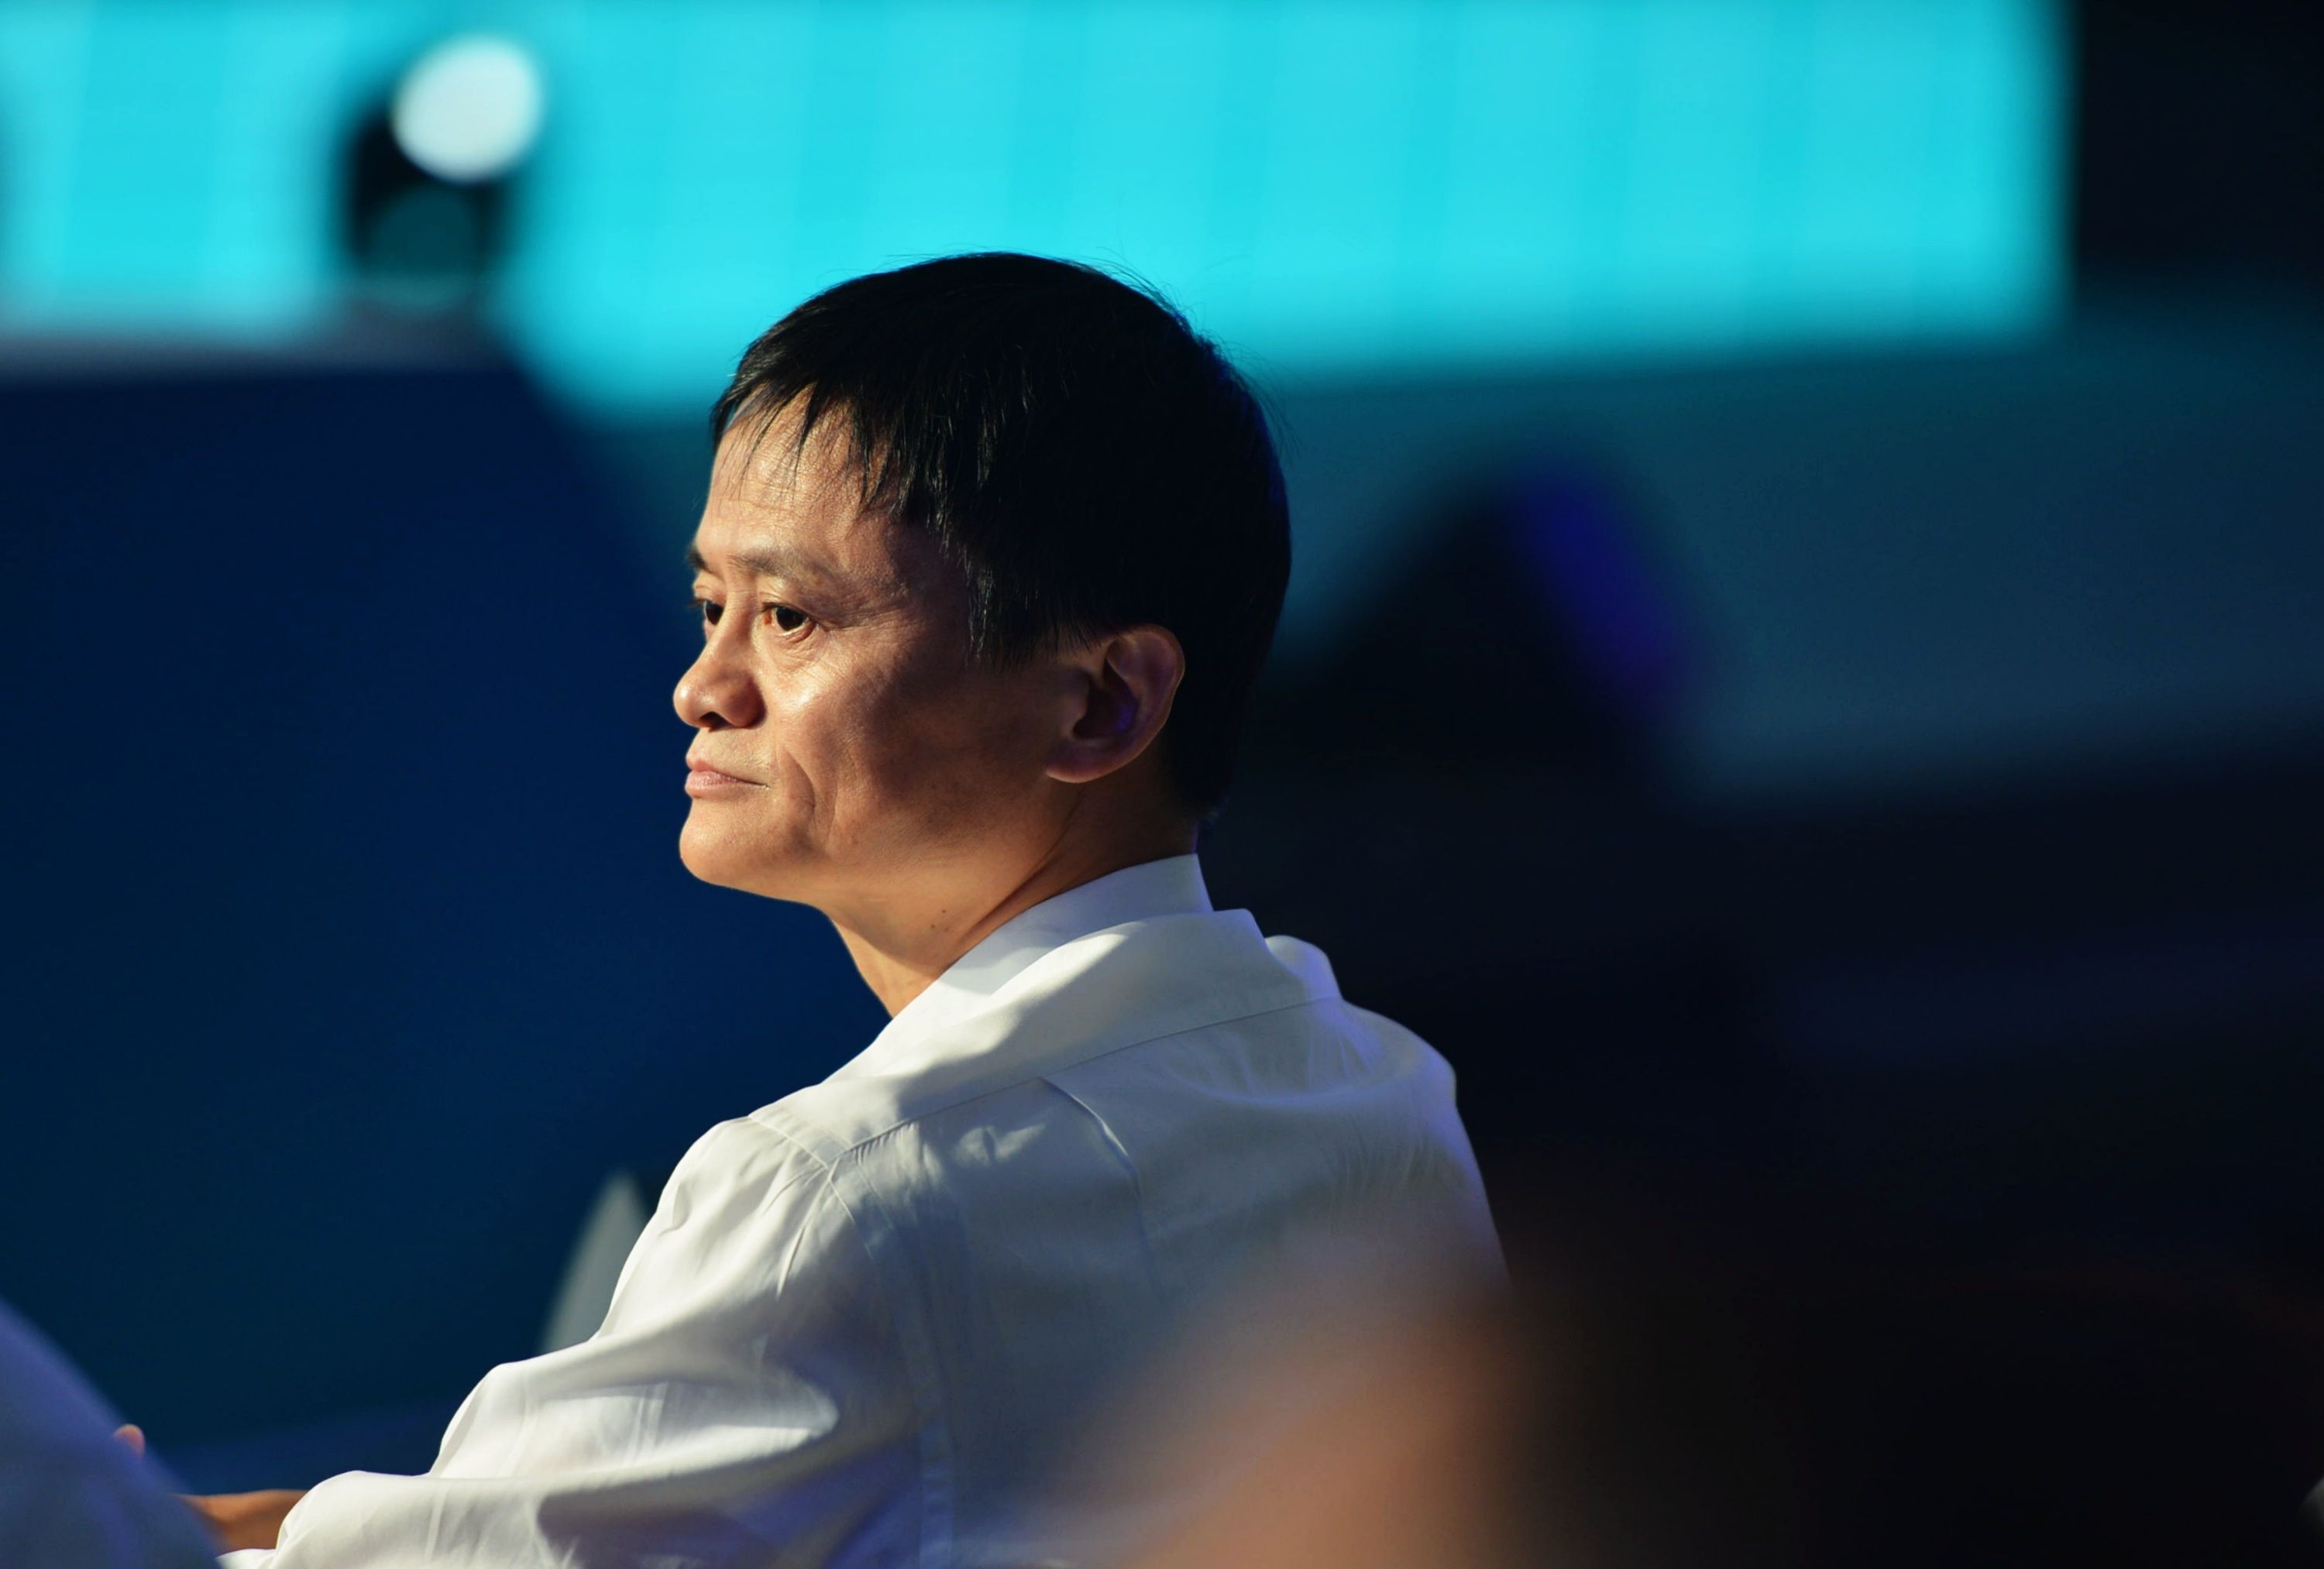 Sfârşitul unei ere: Co-fondatorul Alibaba, Jack Ma- unul dintre cei mai bogaţi oameni din lume, se retrage de la conducerea gigantului comerţului electronic 